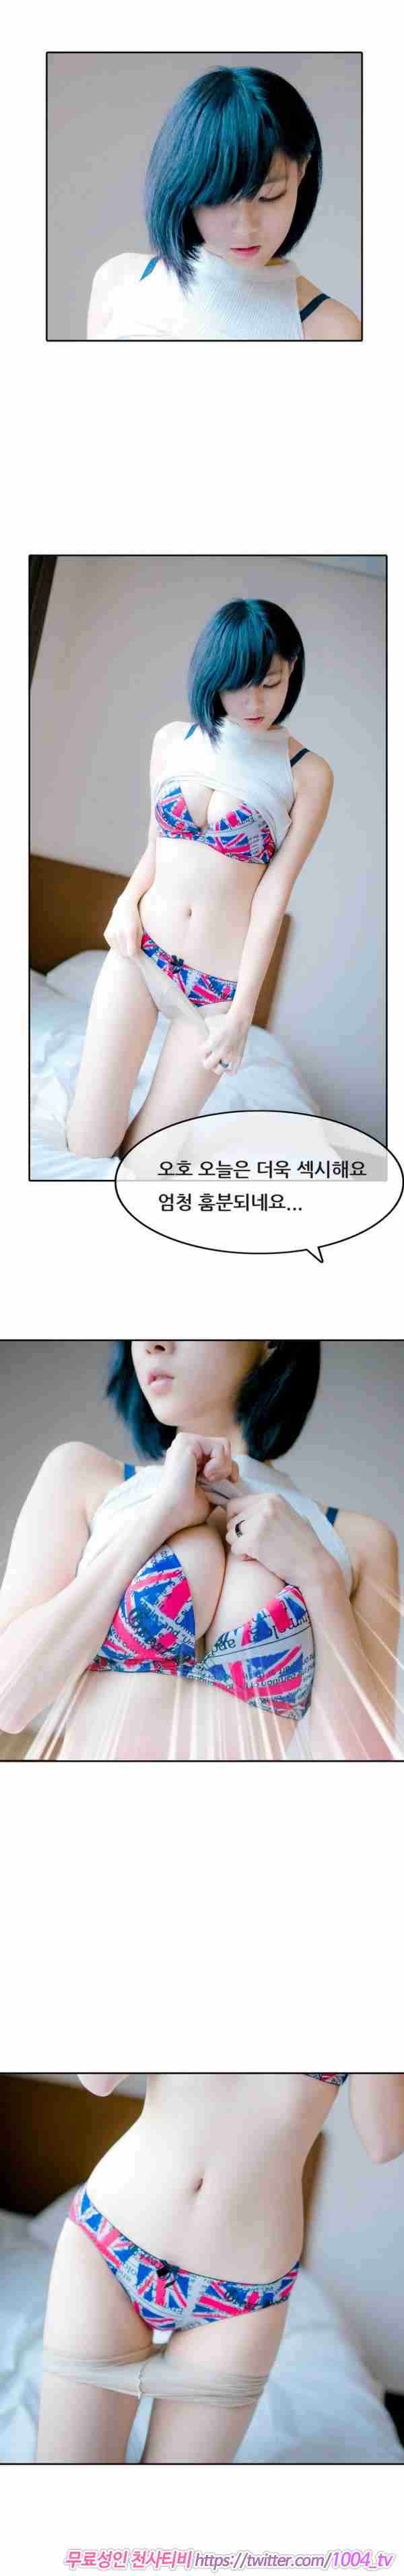 [韩国漫画]ID0023 韩国真人漫画23.rar--性感提示：屁股有沟必火暧昧骚妹胴体气质迷人